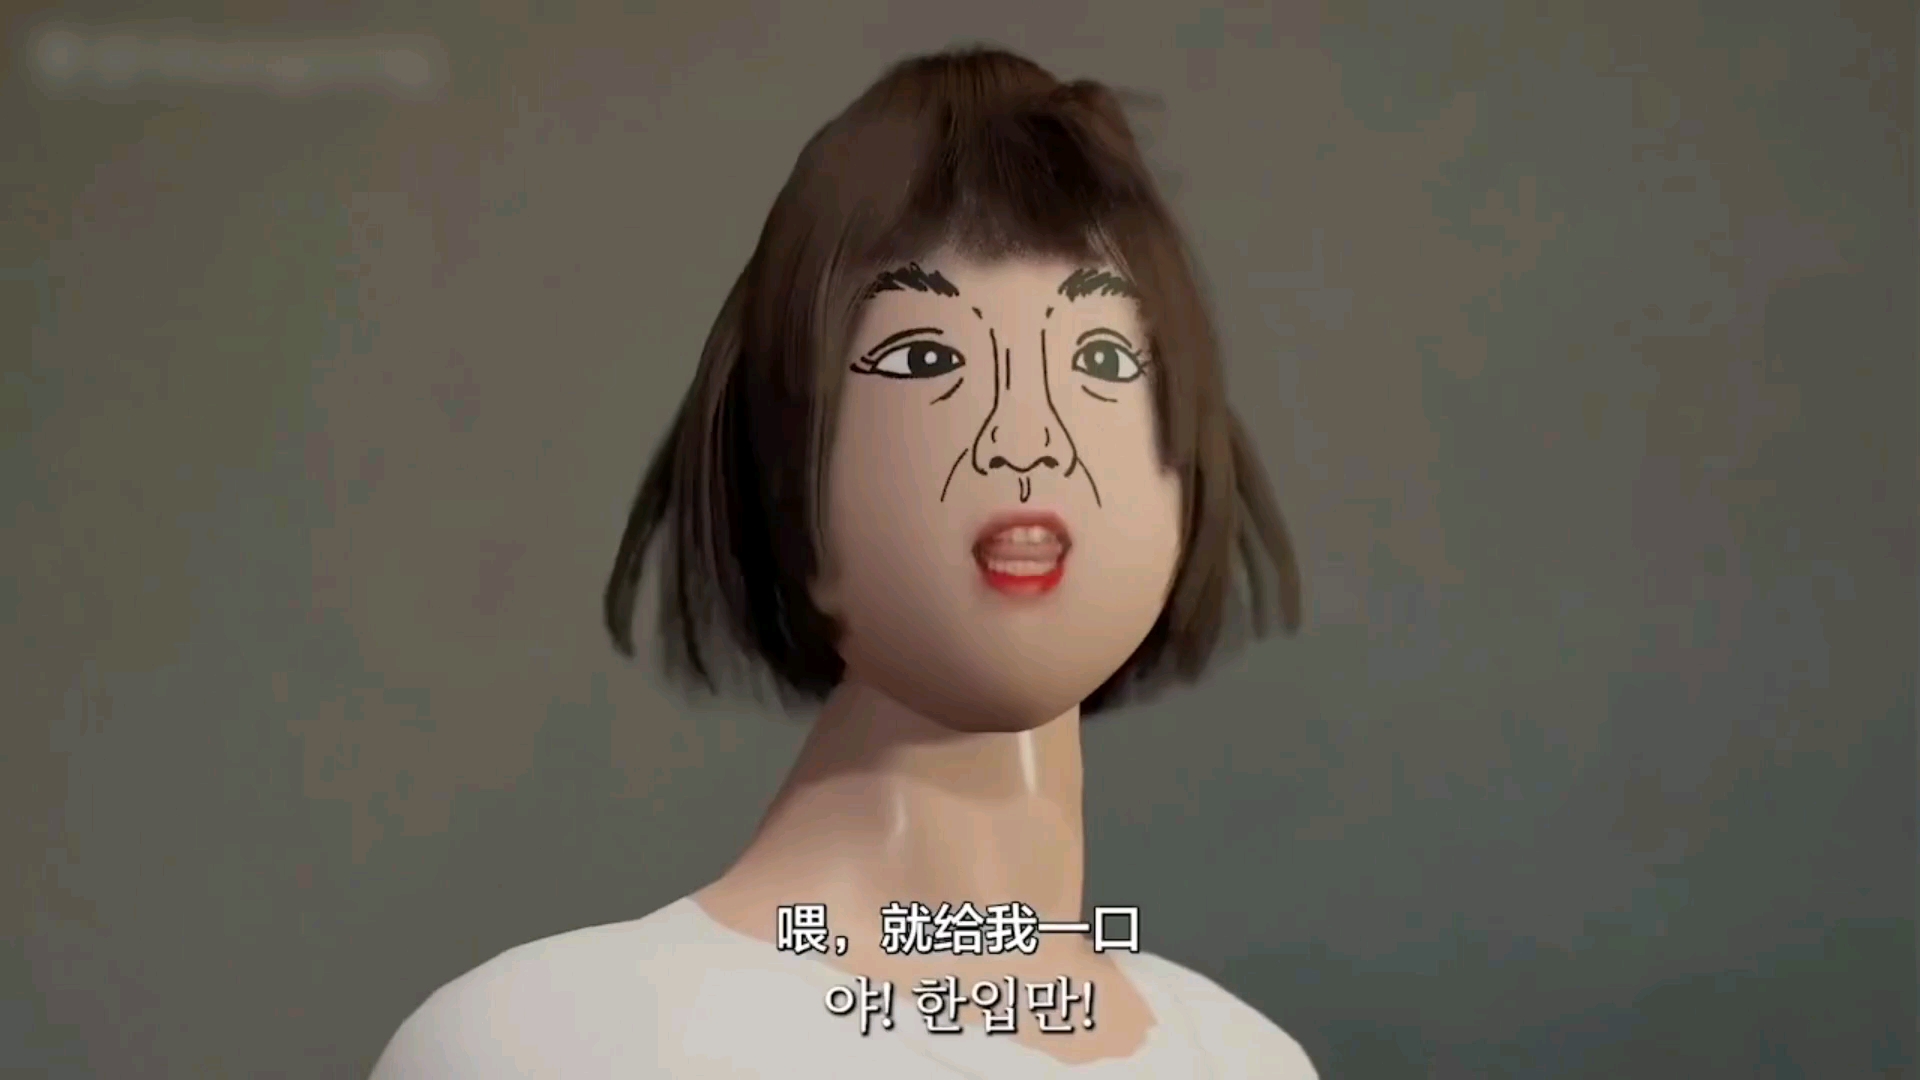 韩性教材称"女性靠外貌"惹议 教育部:改变太麻烦|性骚扰|韩国|性教育|性别歧视_网易新闻